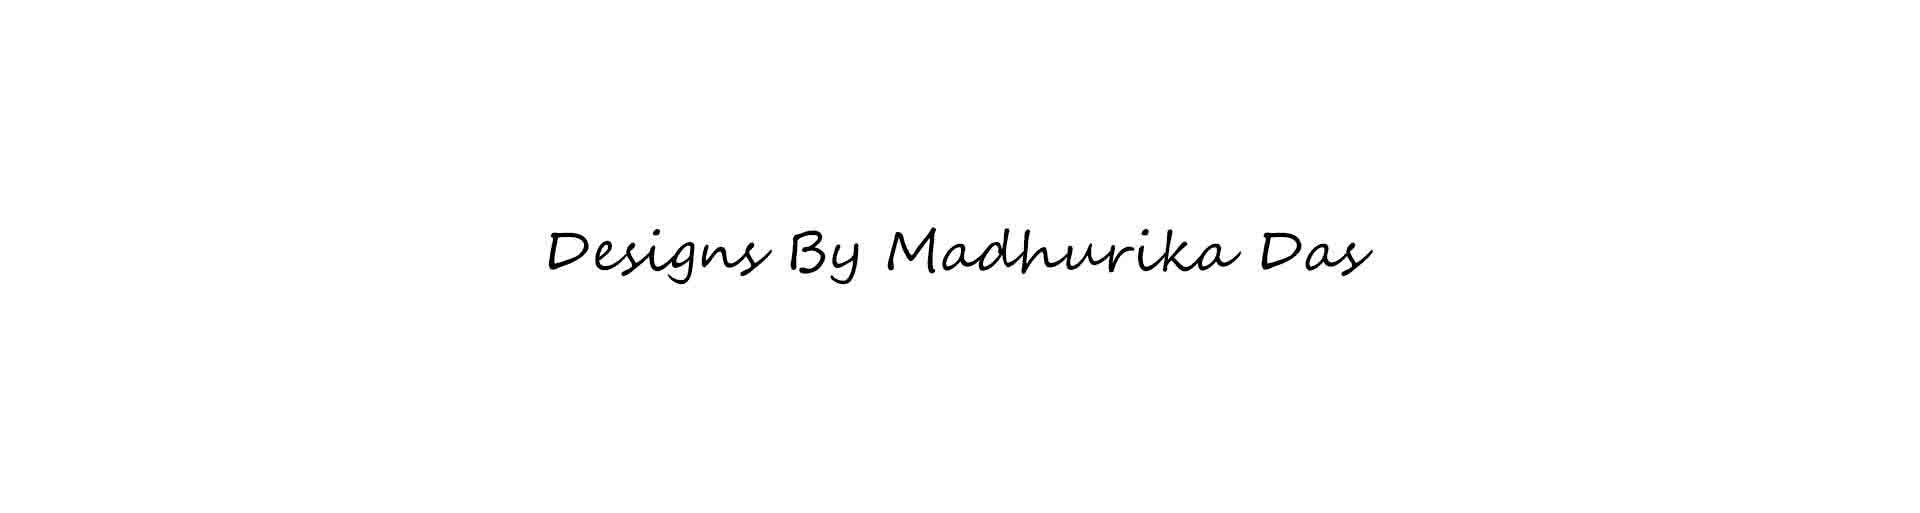 Madhurika Das